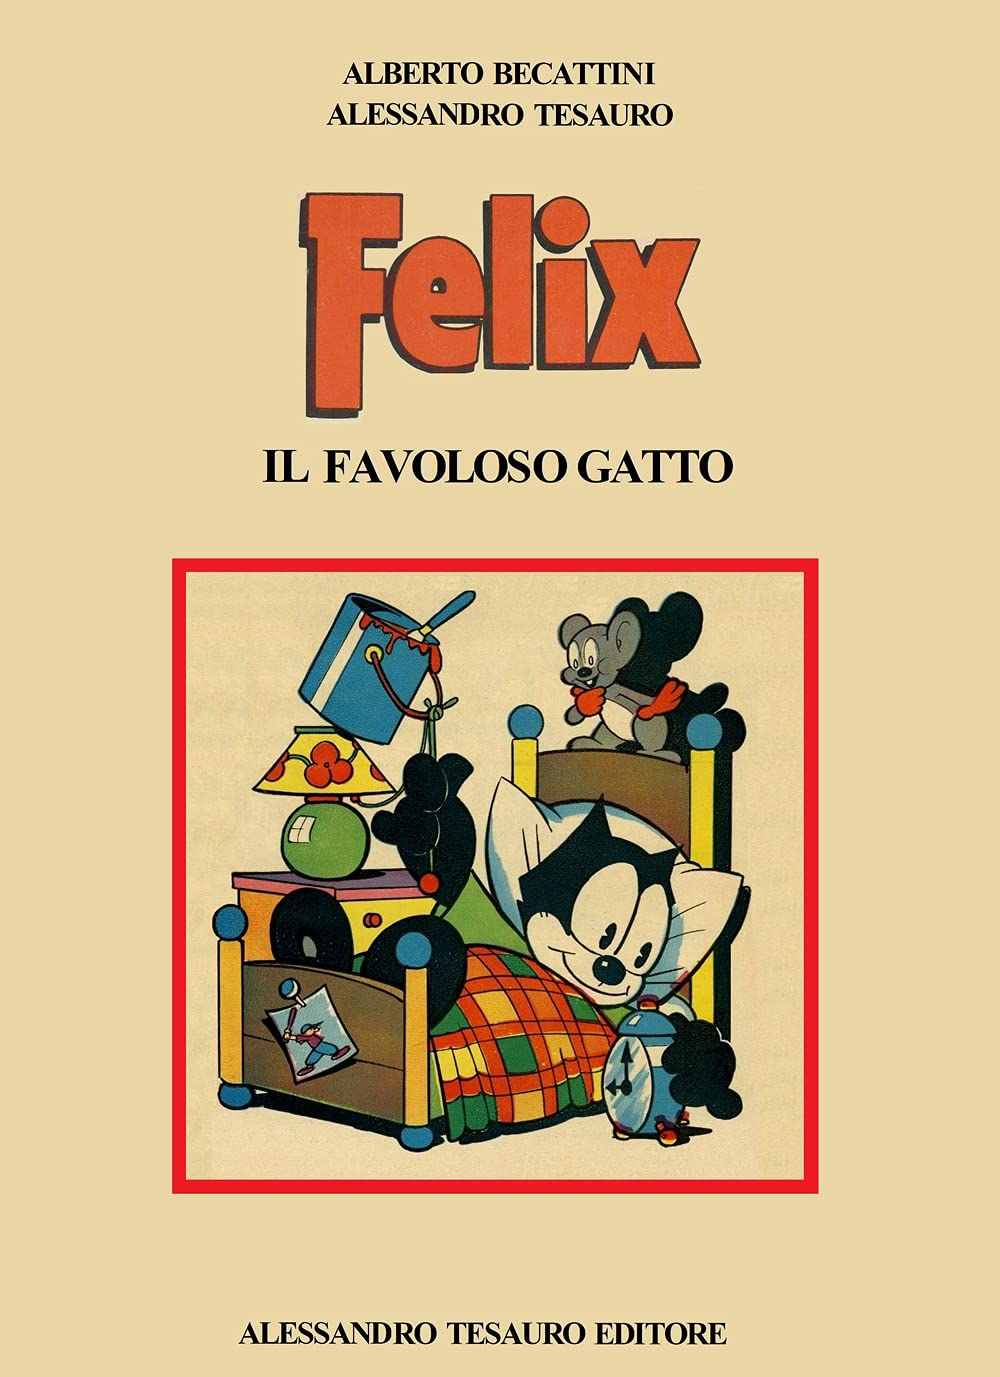 Libri Alberto Becattini / Alessandro Tesauro - Felix. Il Favoloso Gatto NUOVO SIGILLATO, EDIZIONE DEL 29/04/2021 SUBITO DISPONIBILE